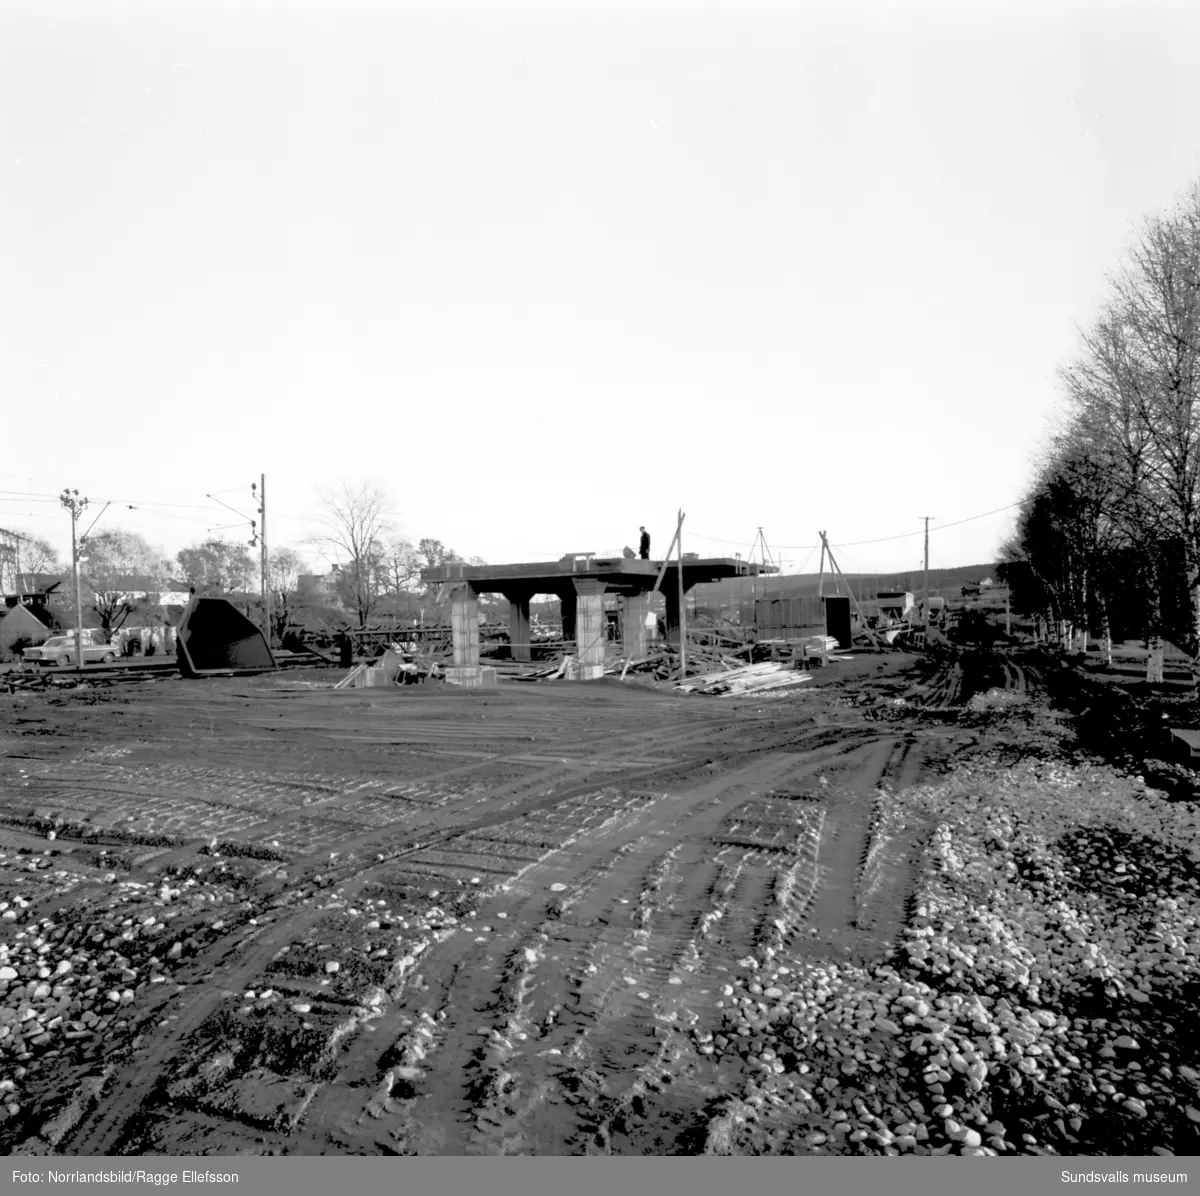 Silobygge invid järnvägen i Granlo, Selånger.